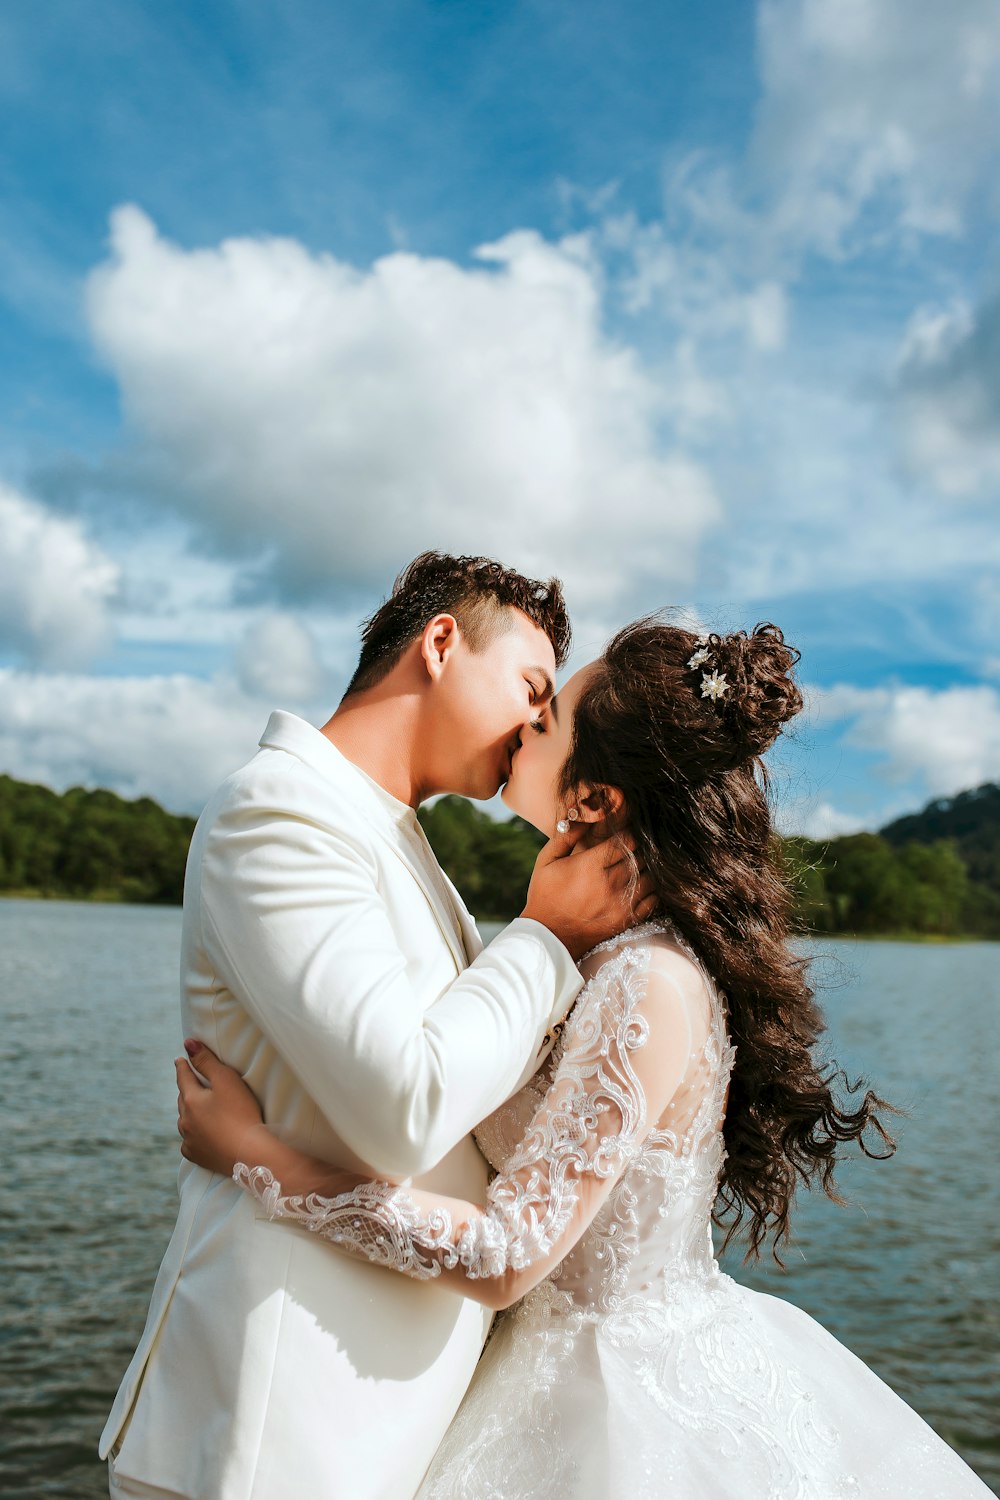 Una novia y un novio besándose frente a un lago